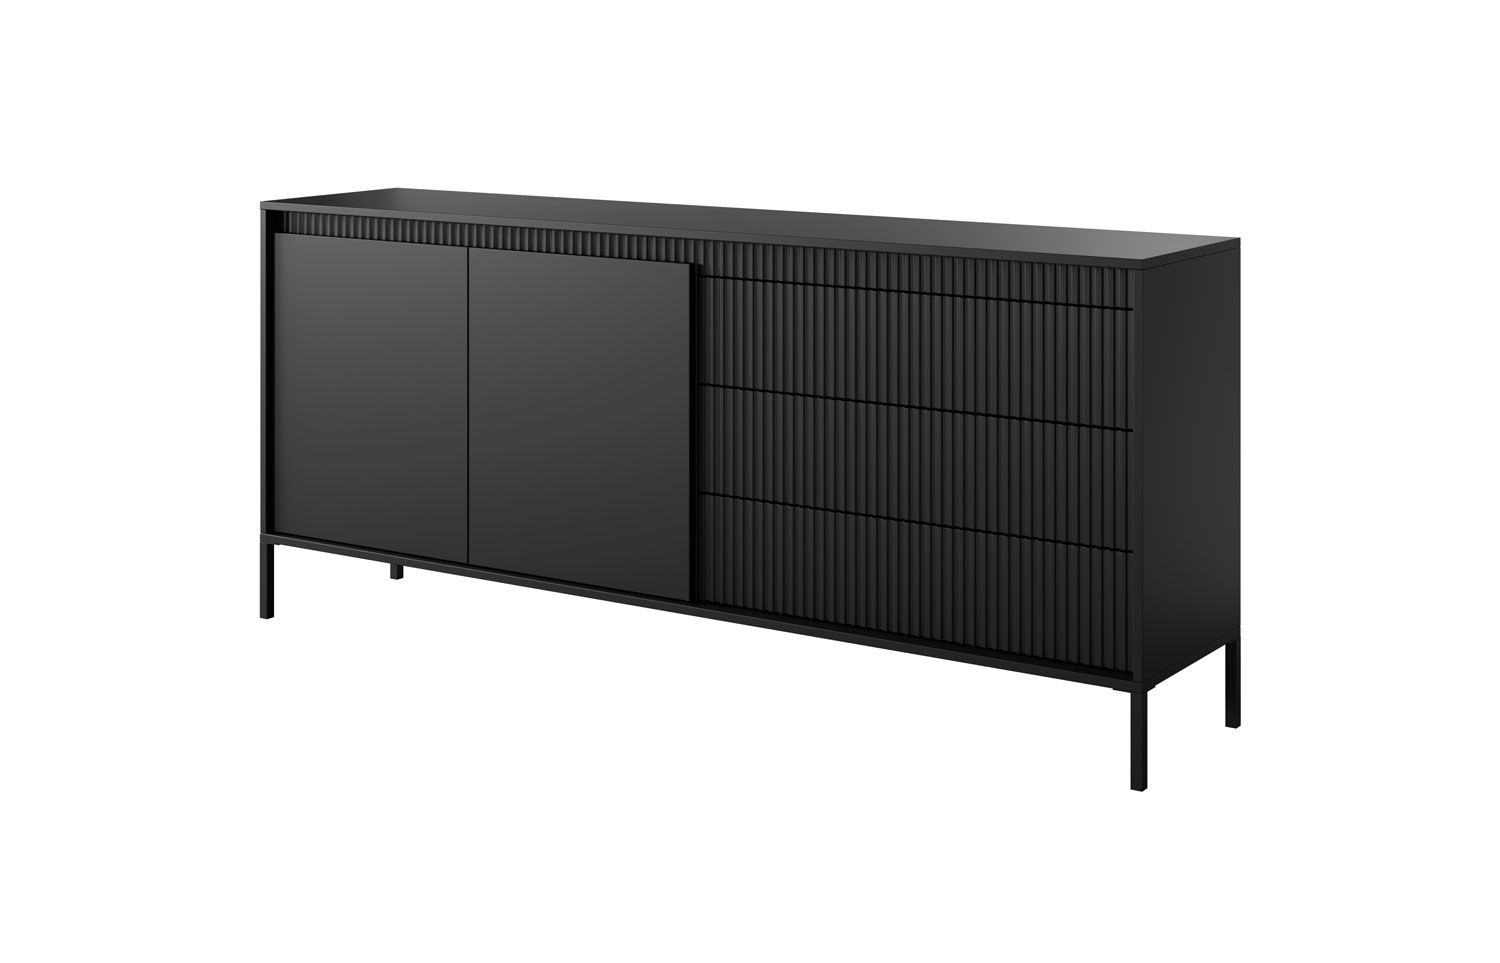 Kommode / Sideboard mit drei Schubladen Balta 09, vier Fächer, Farbe: Schwarz, Maße: 41 x 187 x 39,5 cm, Push-to-open Funktion, ABS-Kantenschutz